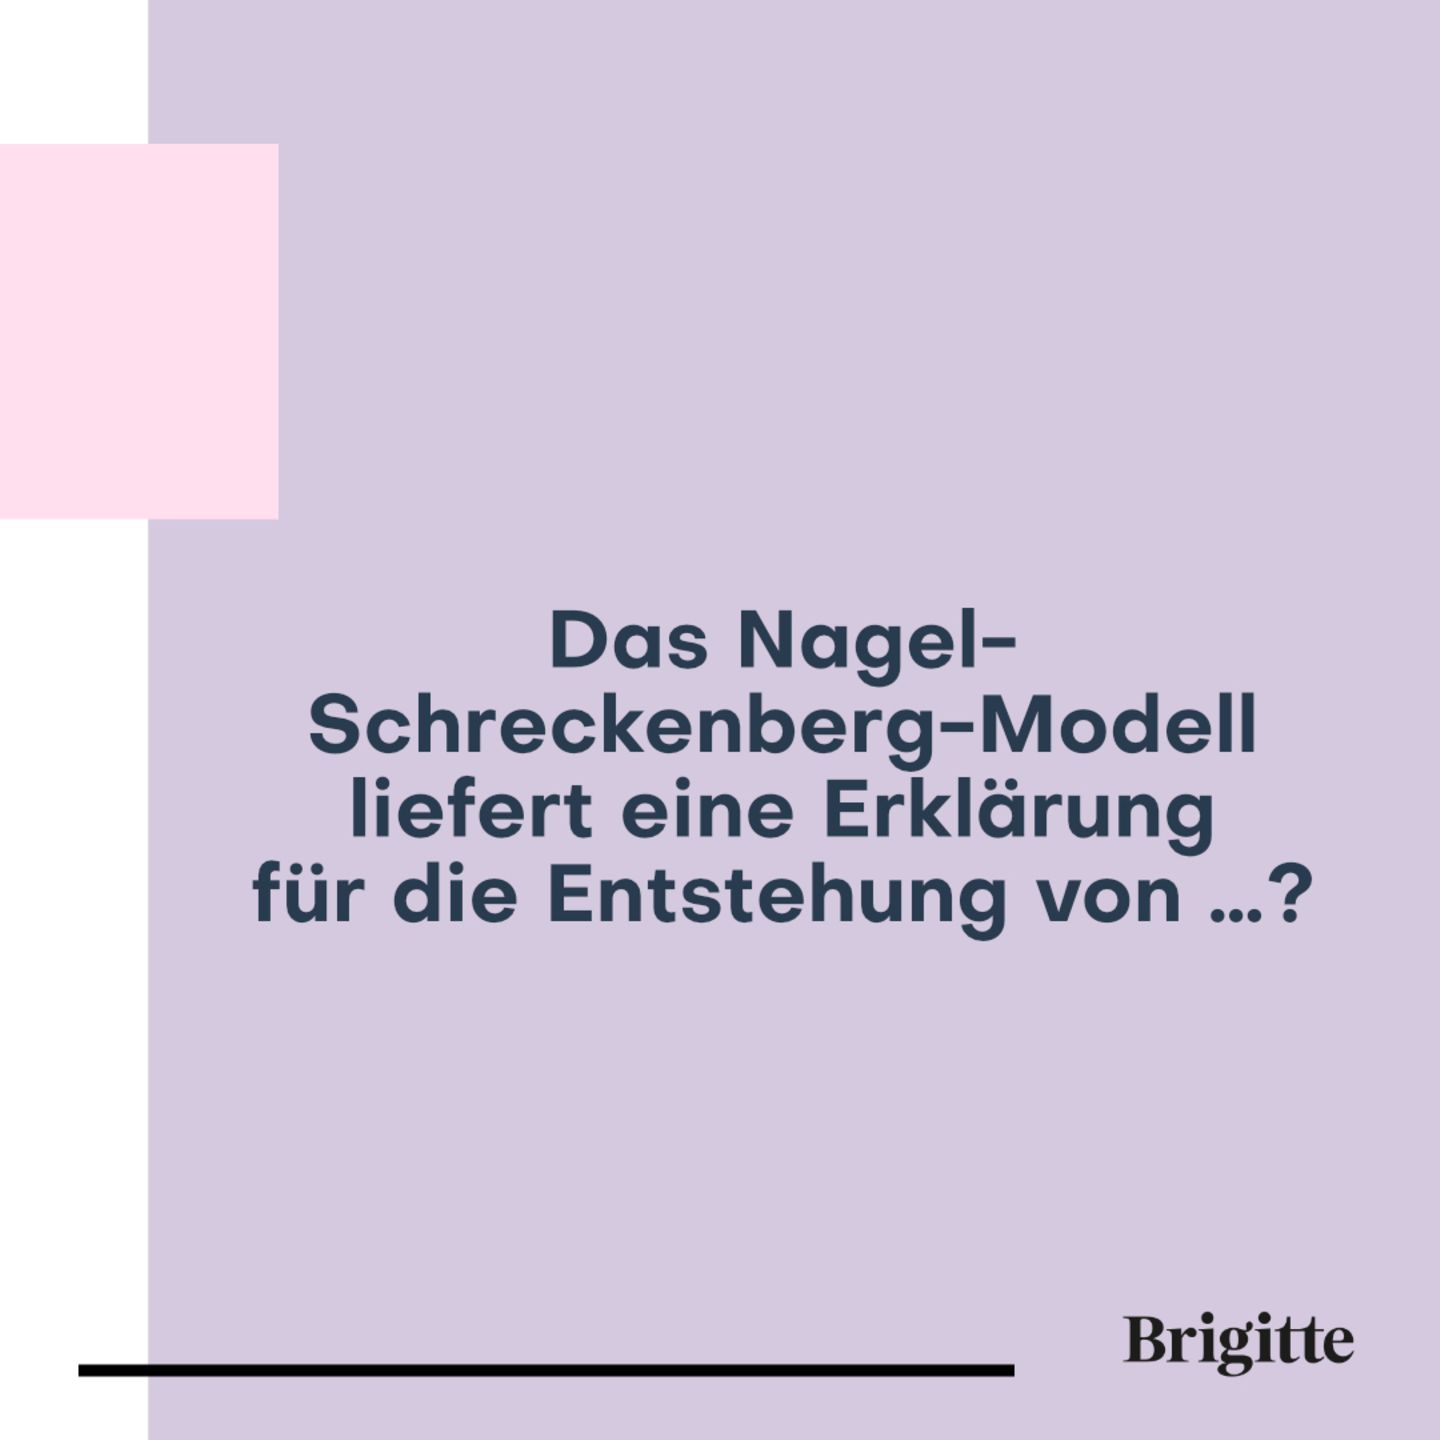 Wer wird Millionär: Nagel-Schreckenberg-Modell